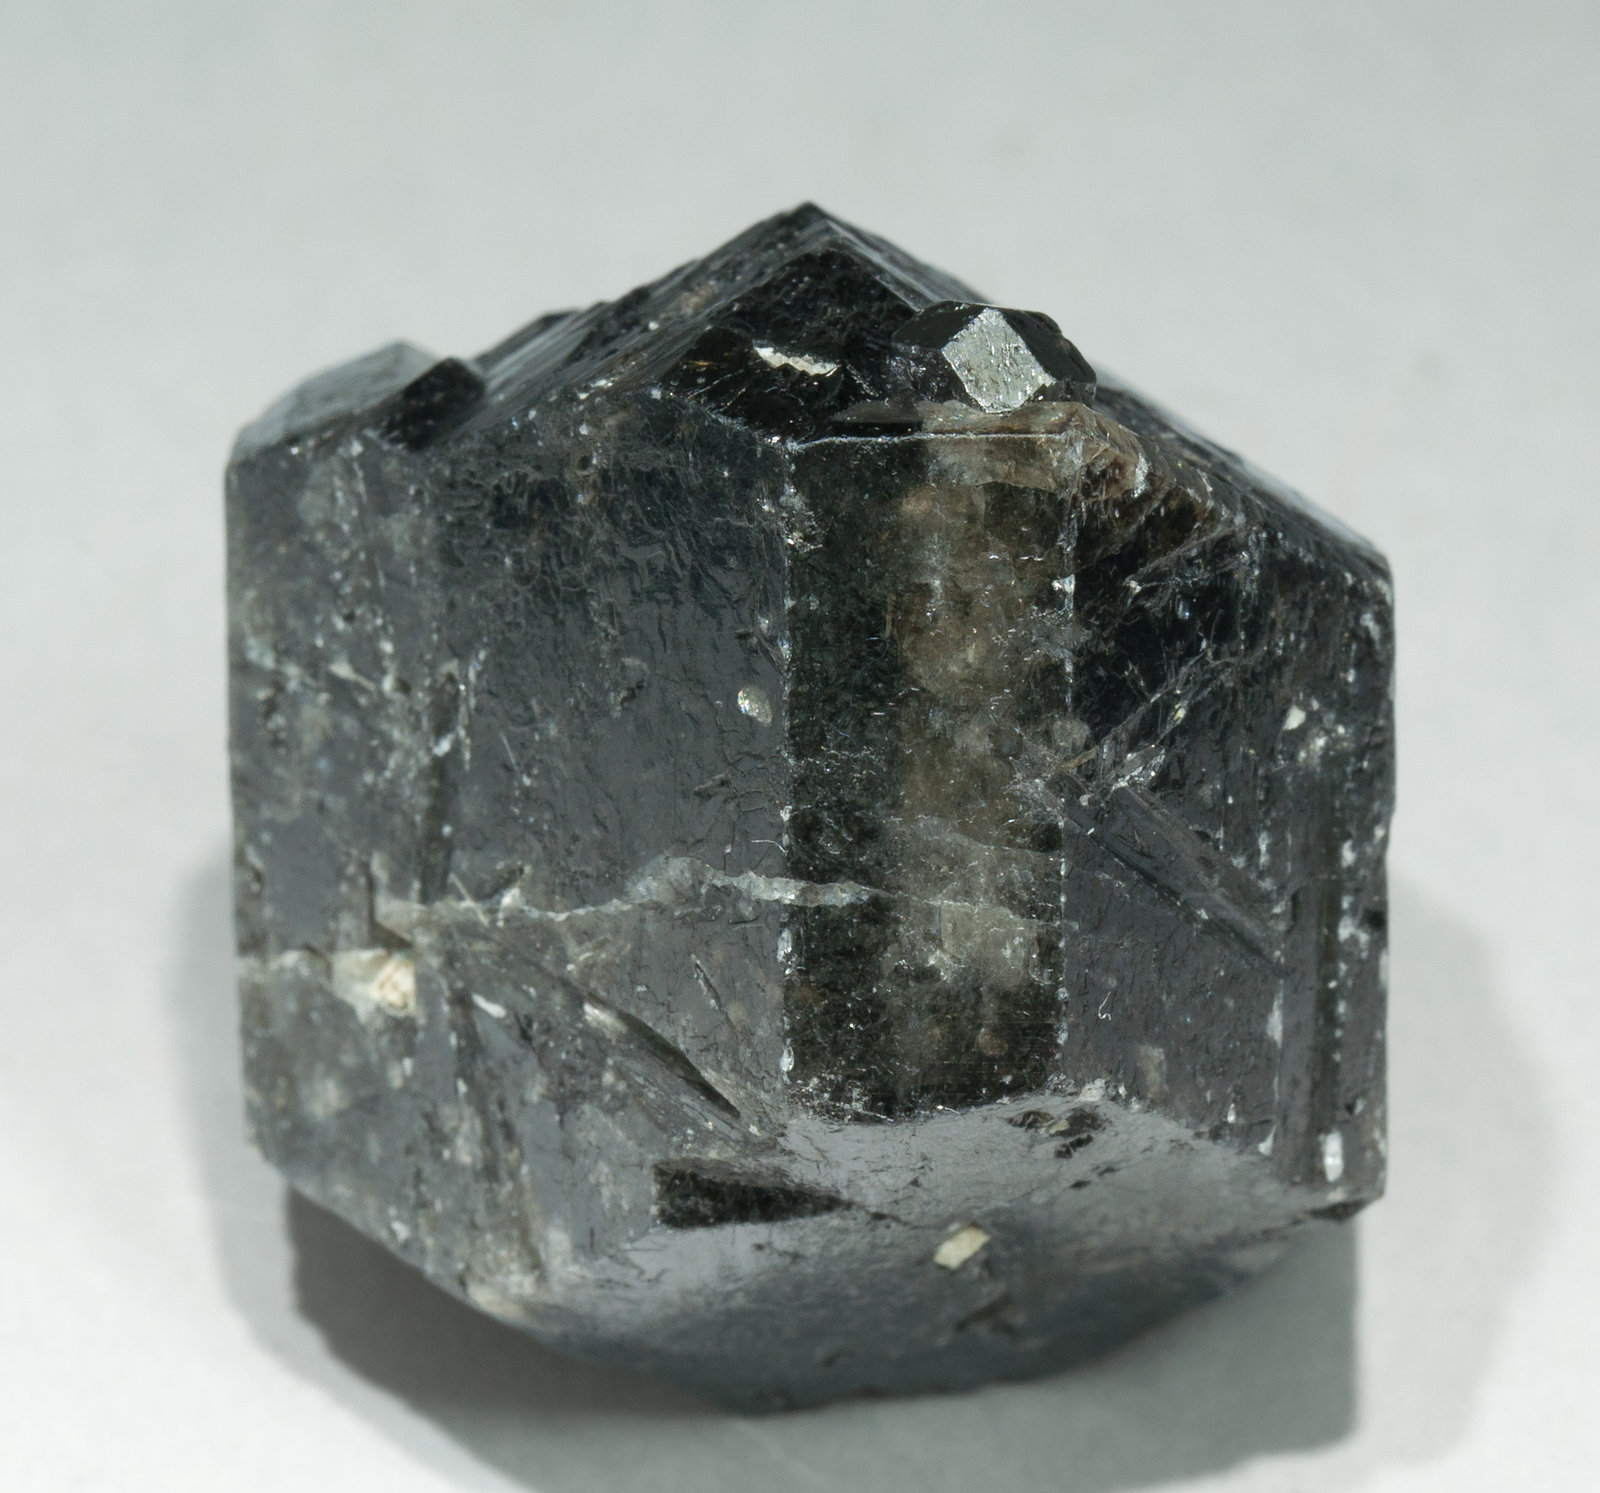 specimens/s_imagesZ1/Cassiterite-AE47Z1f.jpg